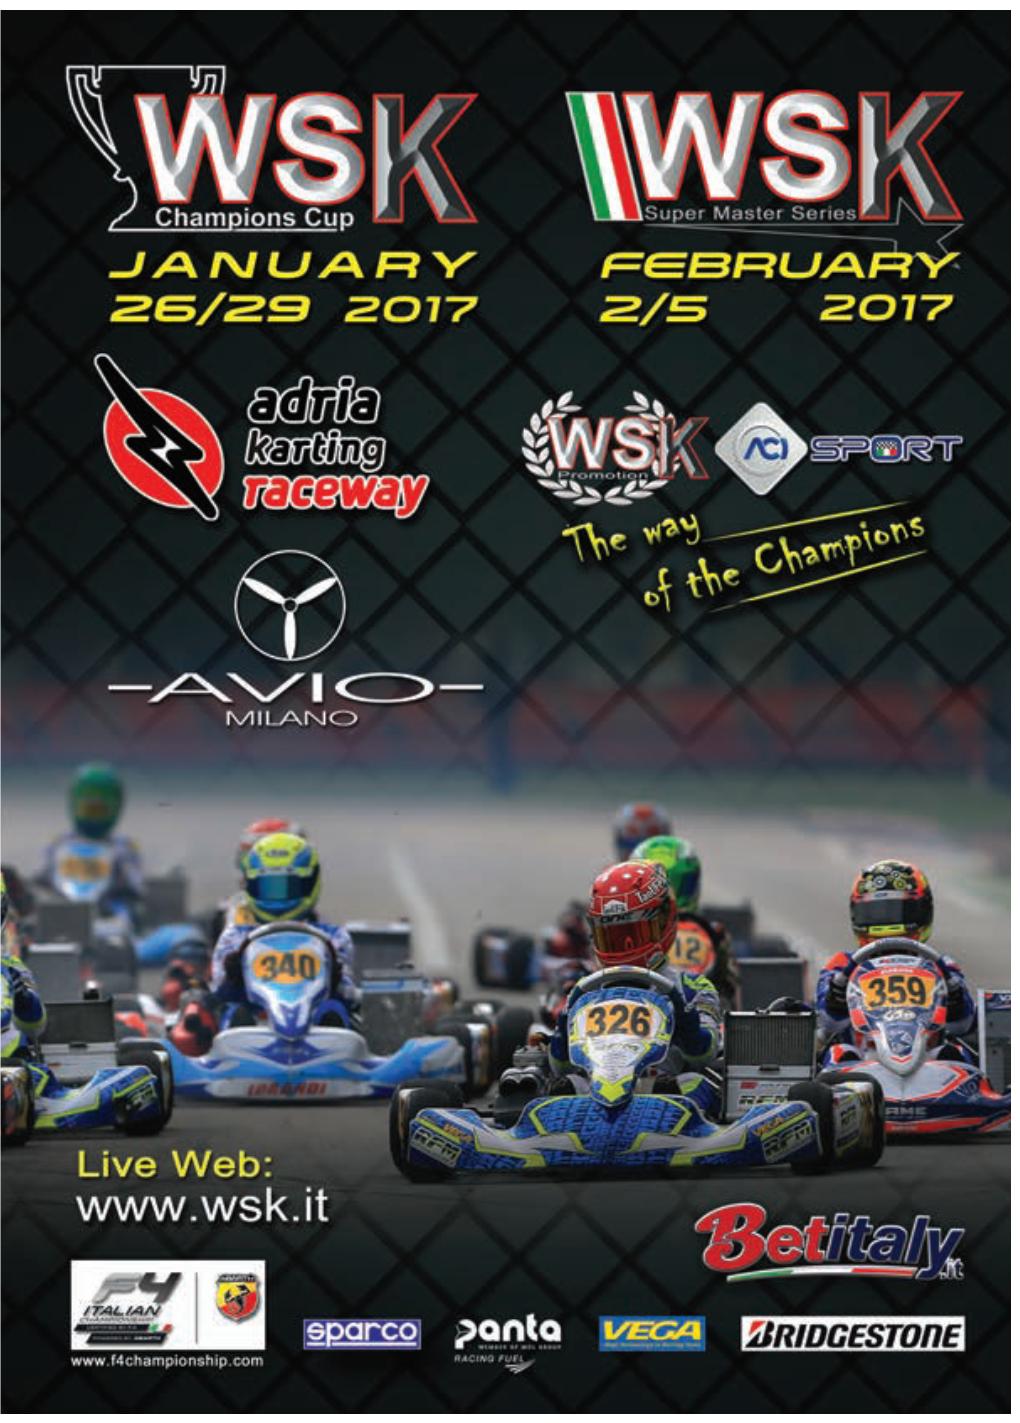 7 Laghi Kart Round 2 | Castelletto Di B.Zzo Super Master Series March 2 - 5